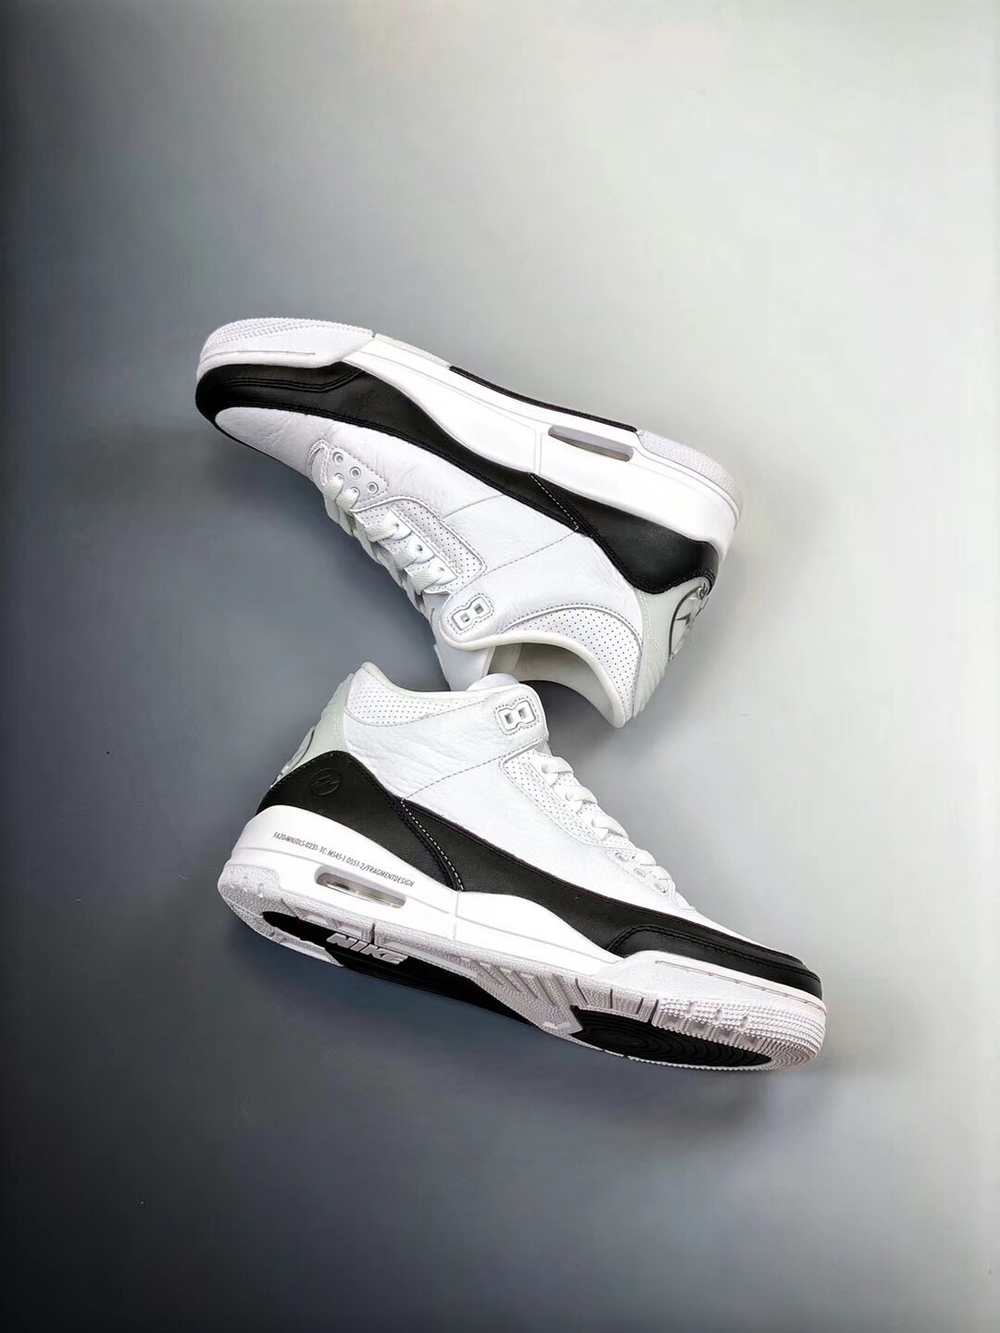 Air Jordan 3 "Fragment Design"